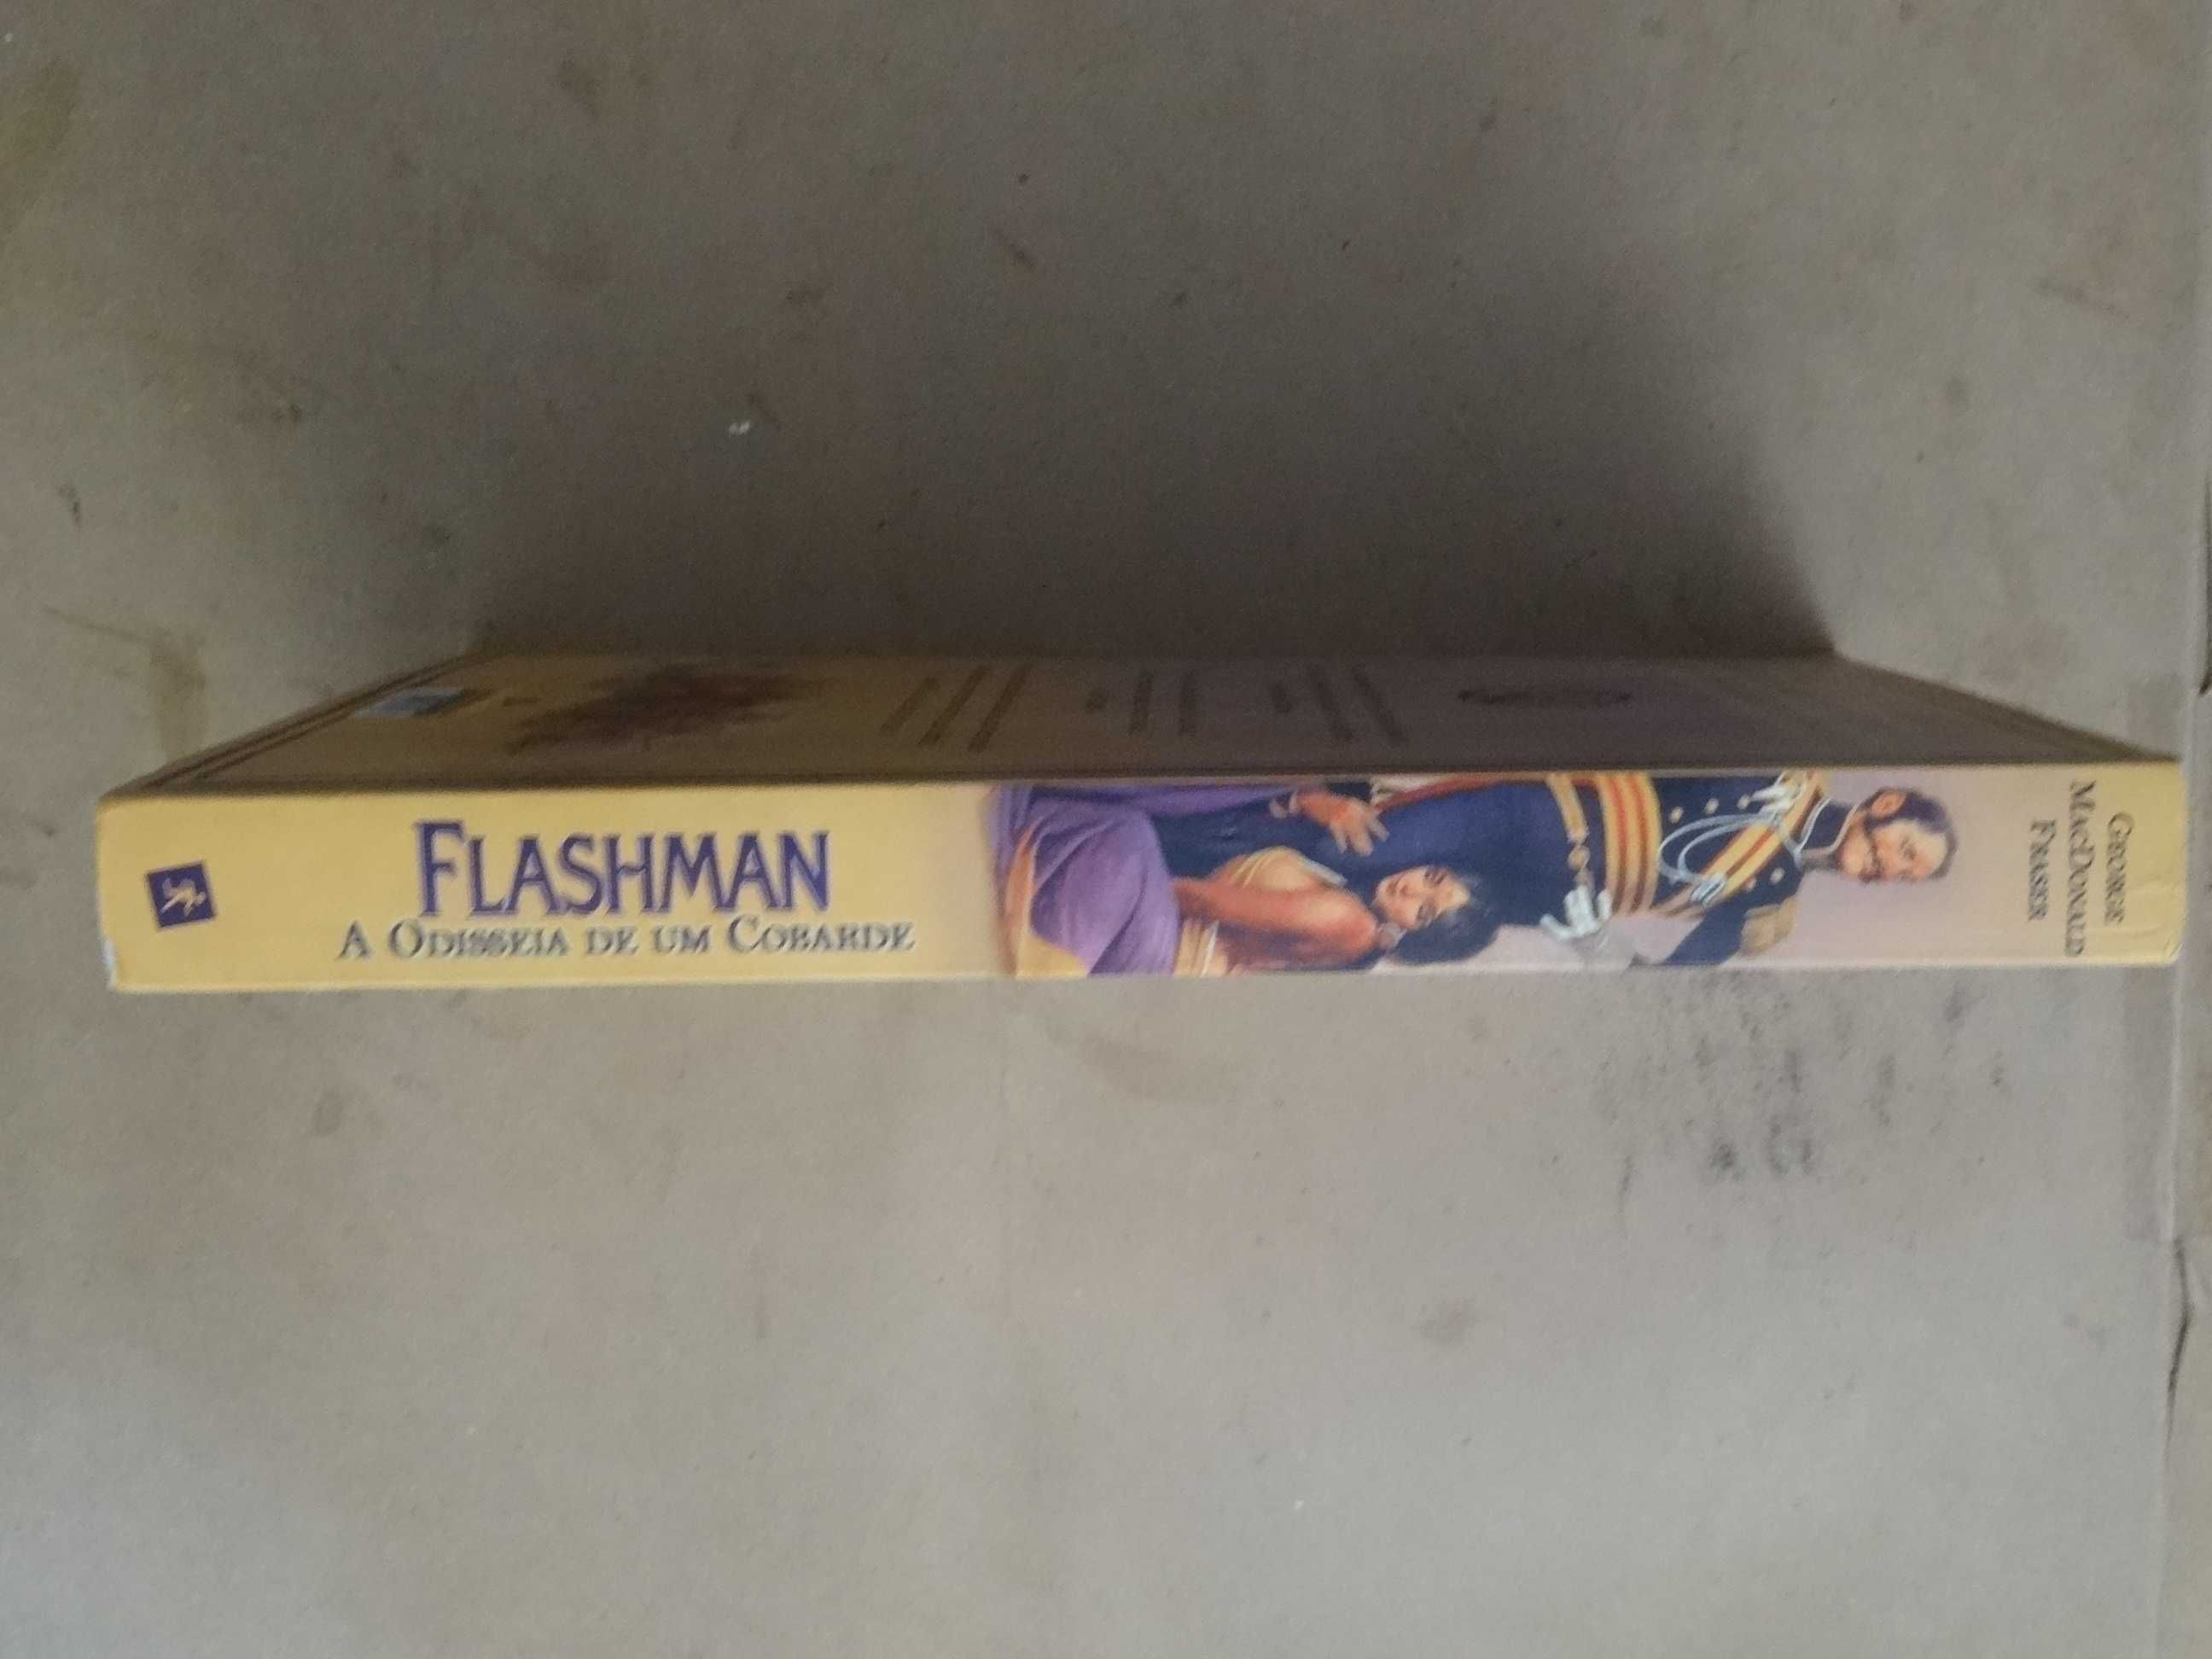 Flashman de George Macdonald Fraser - 1ª Edição